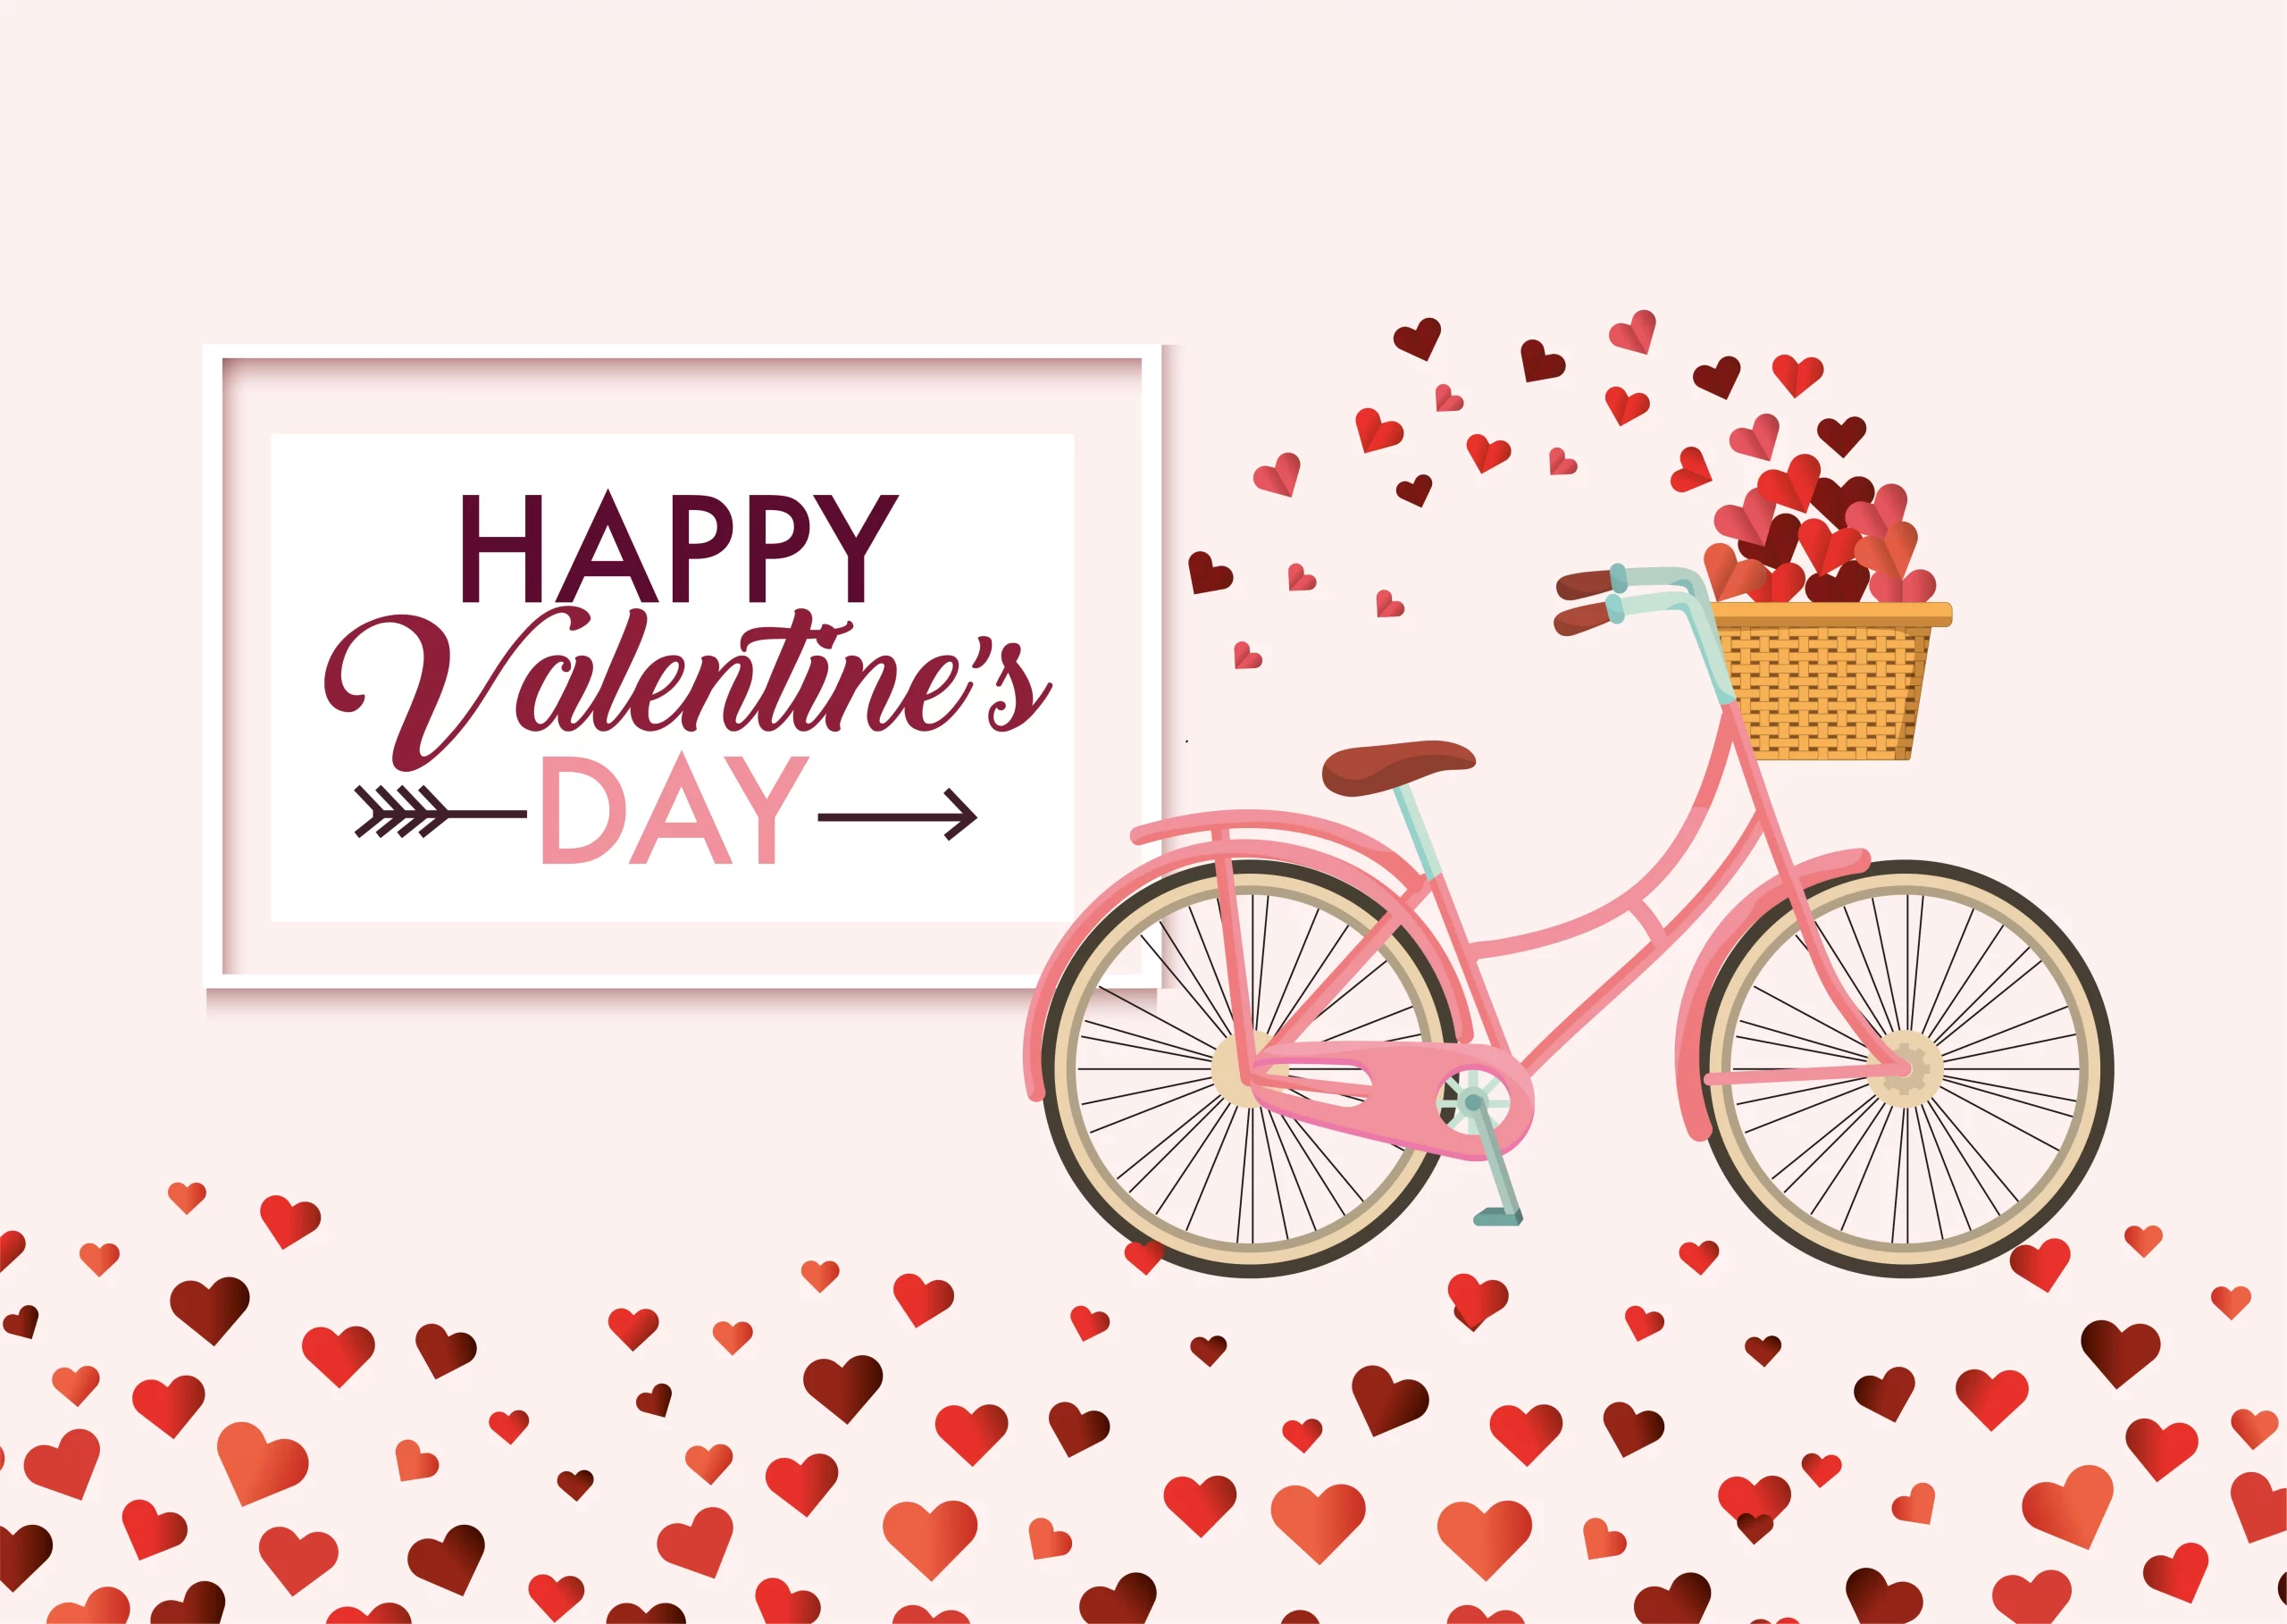 Celebrate Valentine’s Week With Oodies